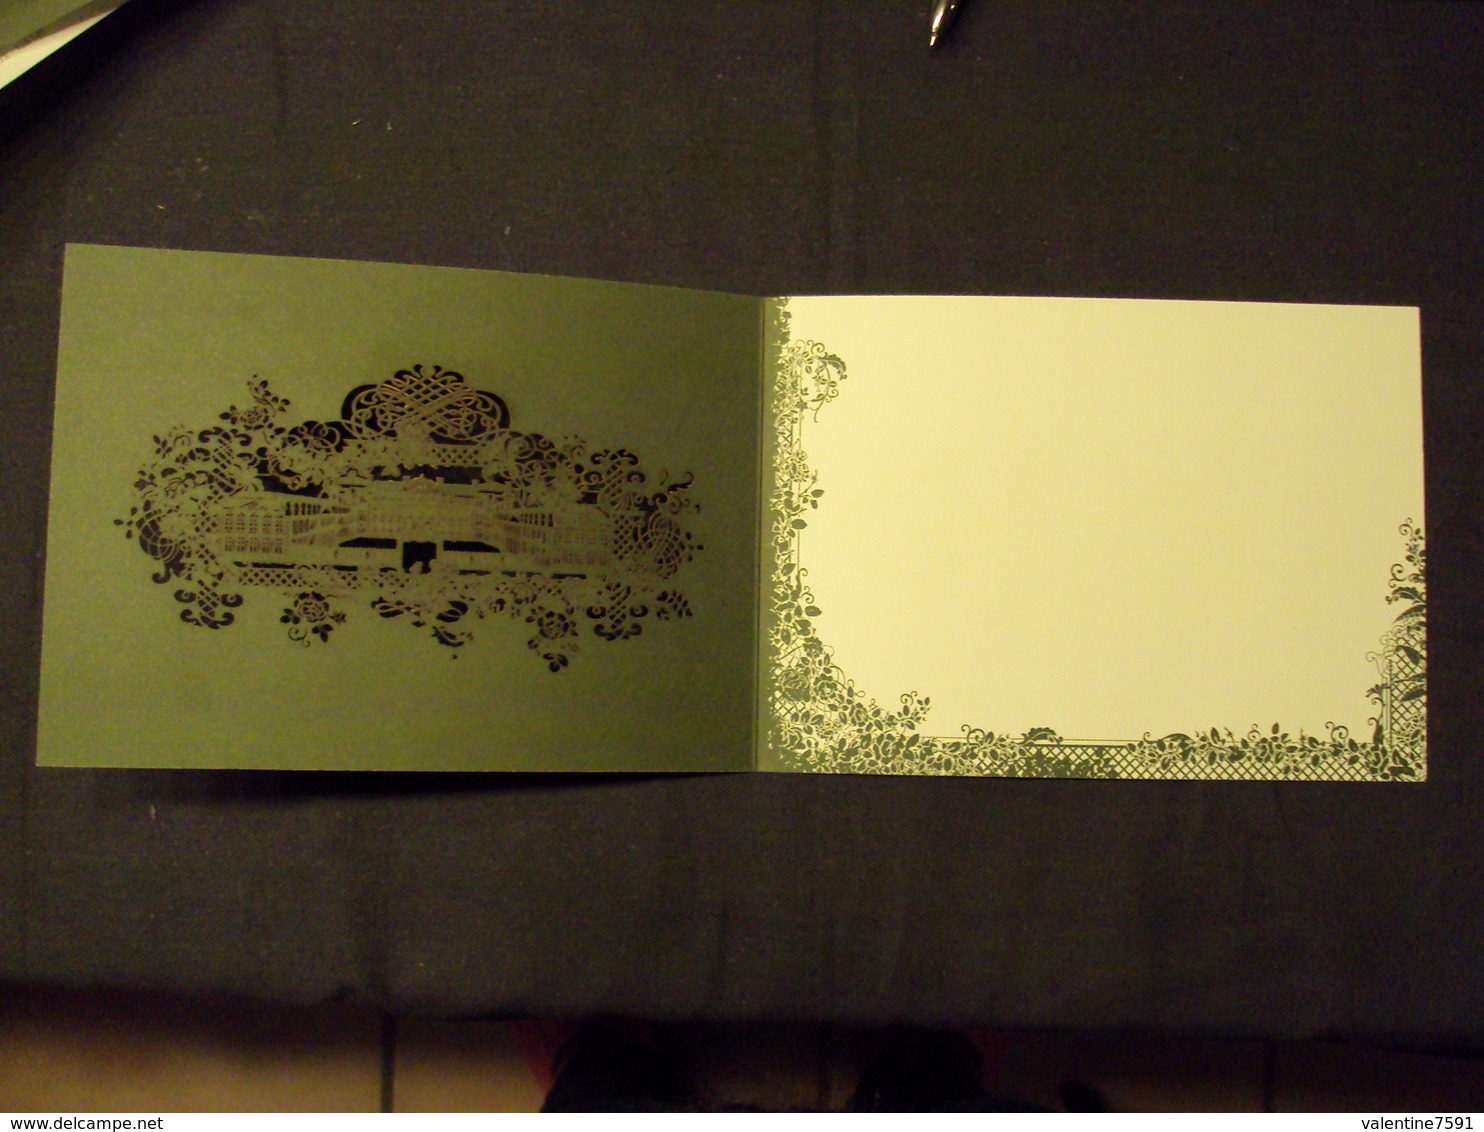 2012- P.A.P. Enveloppe + carte"Jardins de France, Saint Cloud "  N°4663 (valeur permanente  jusqu'à 50 gr) net  4 e